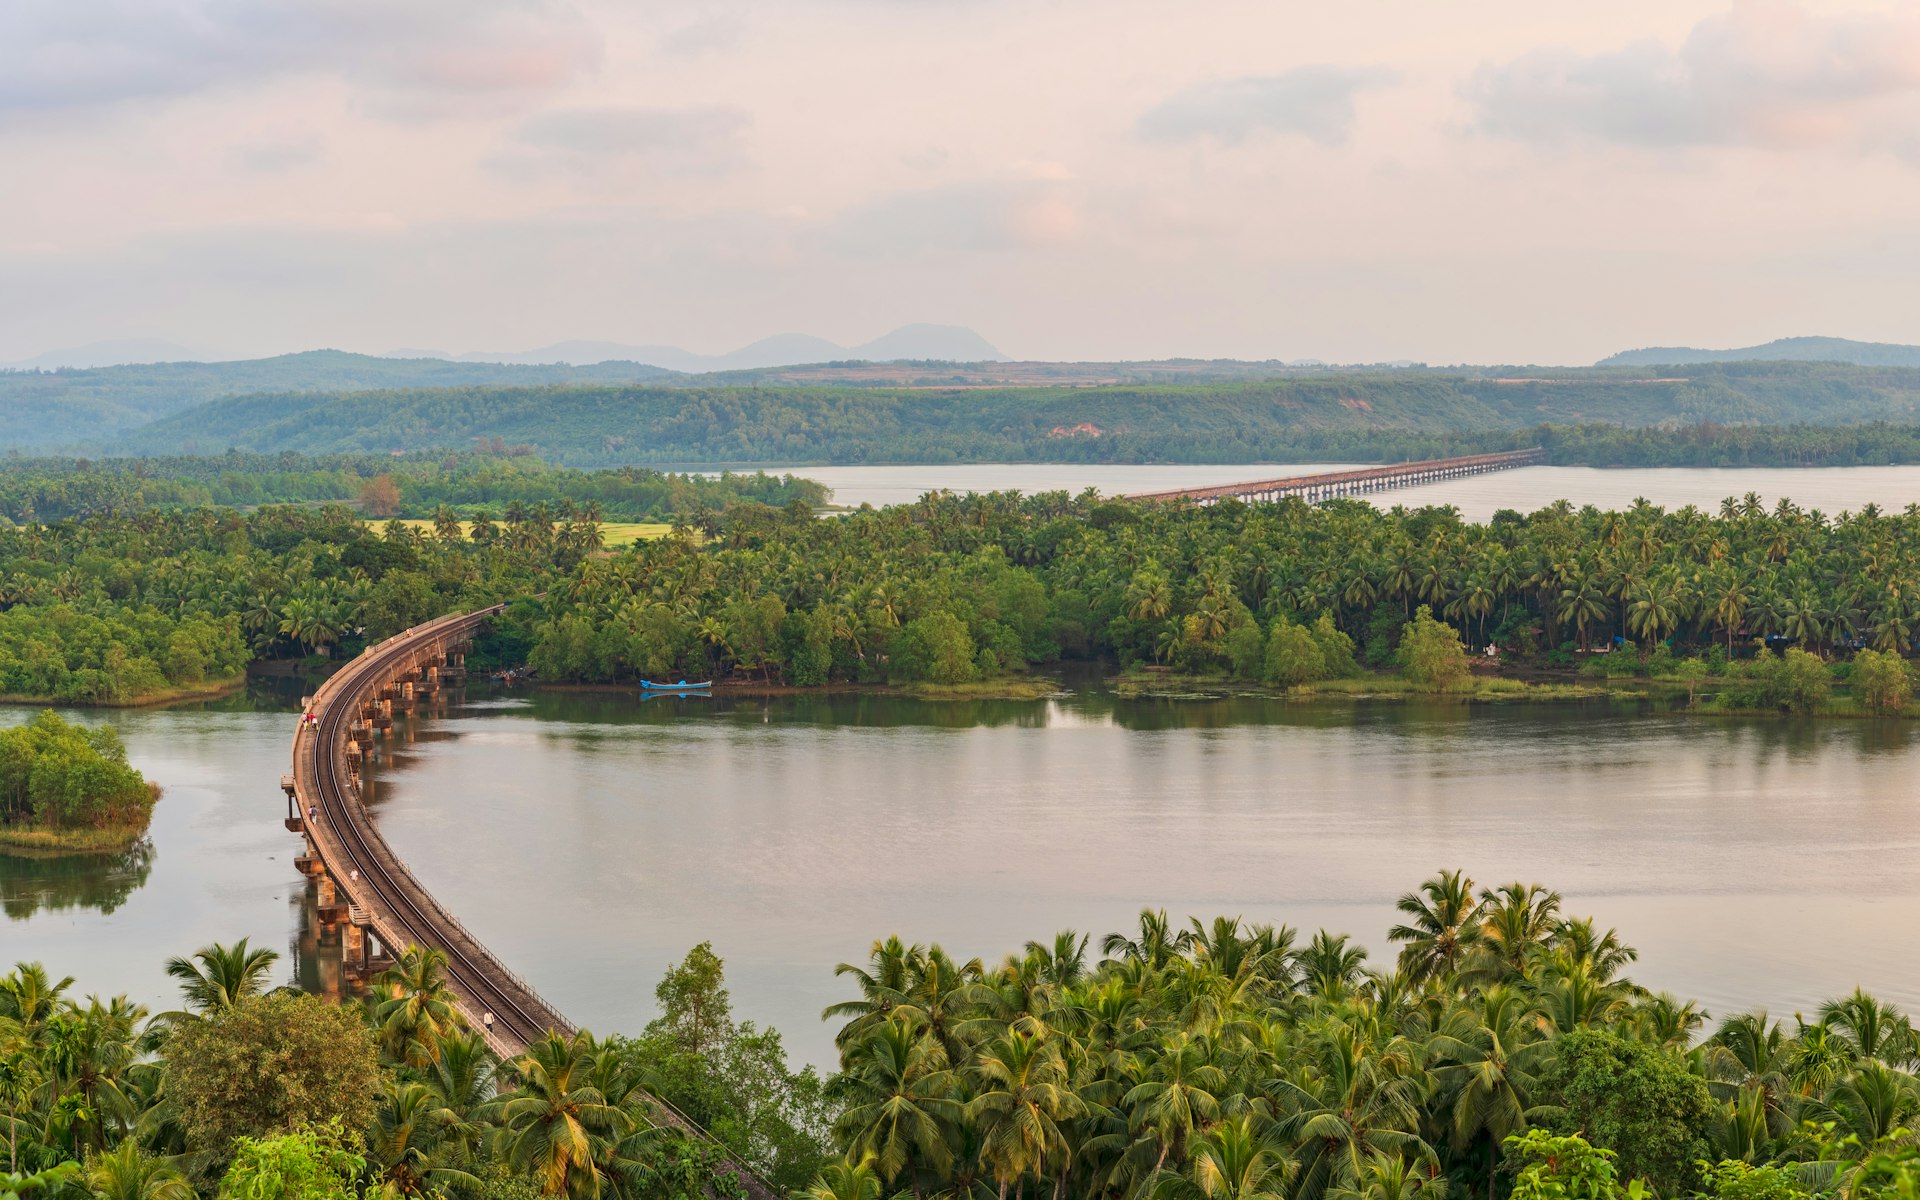 Railway bridge over the Sharavathi River at Honavar, Karnataka